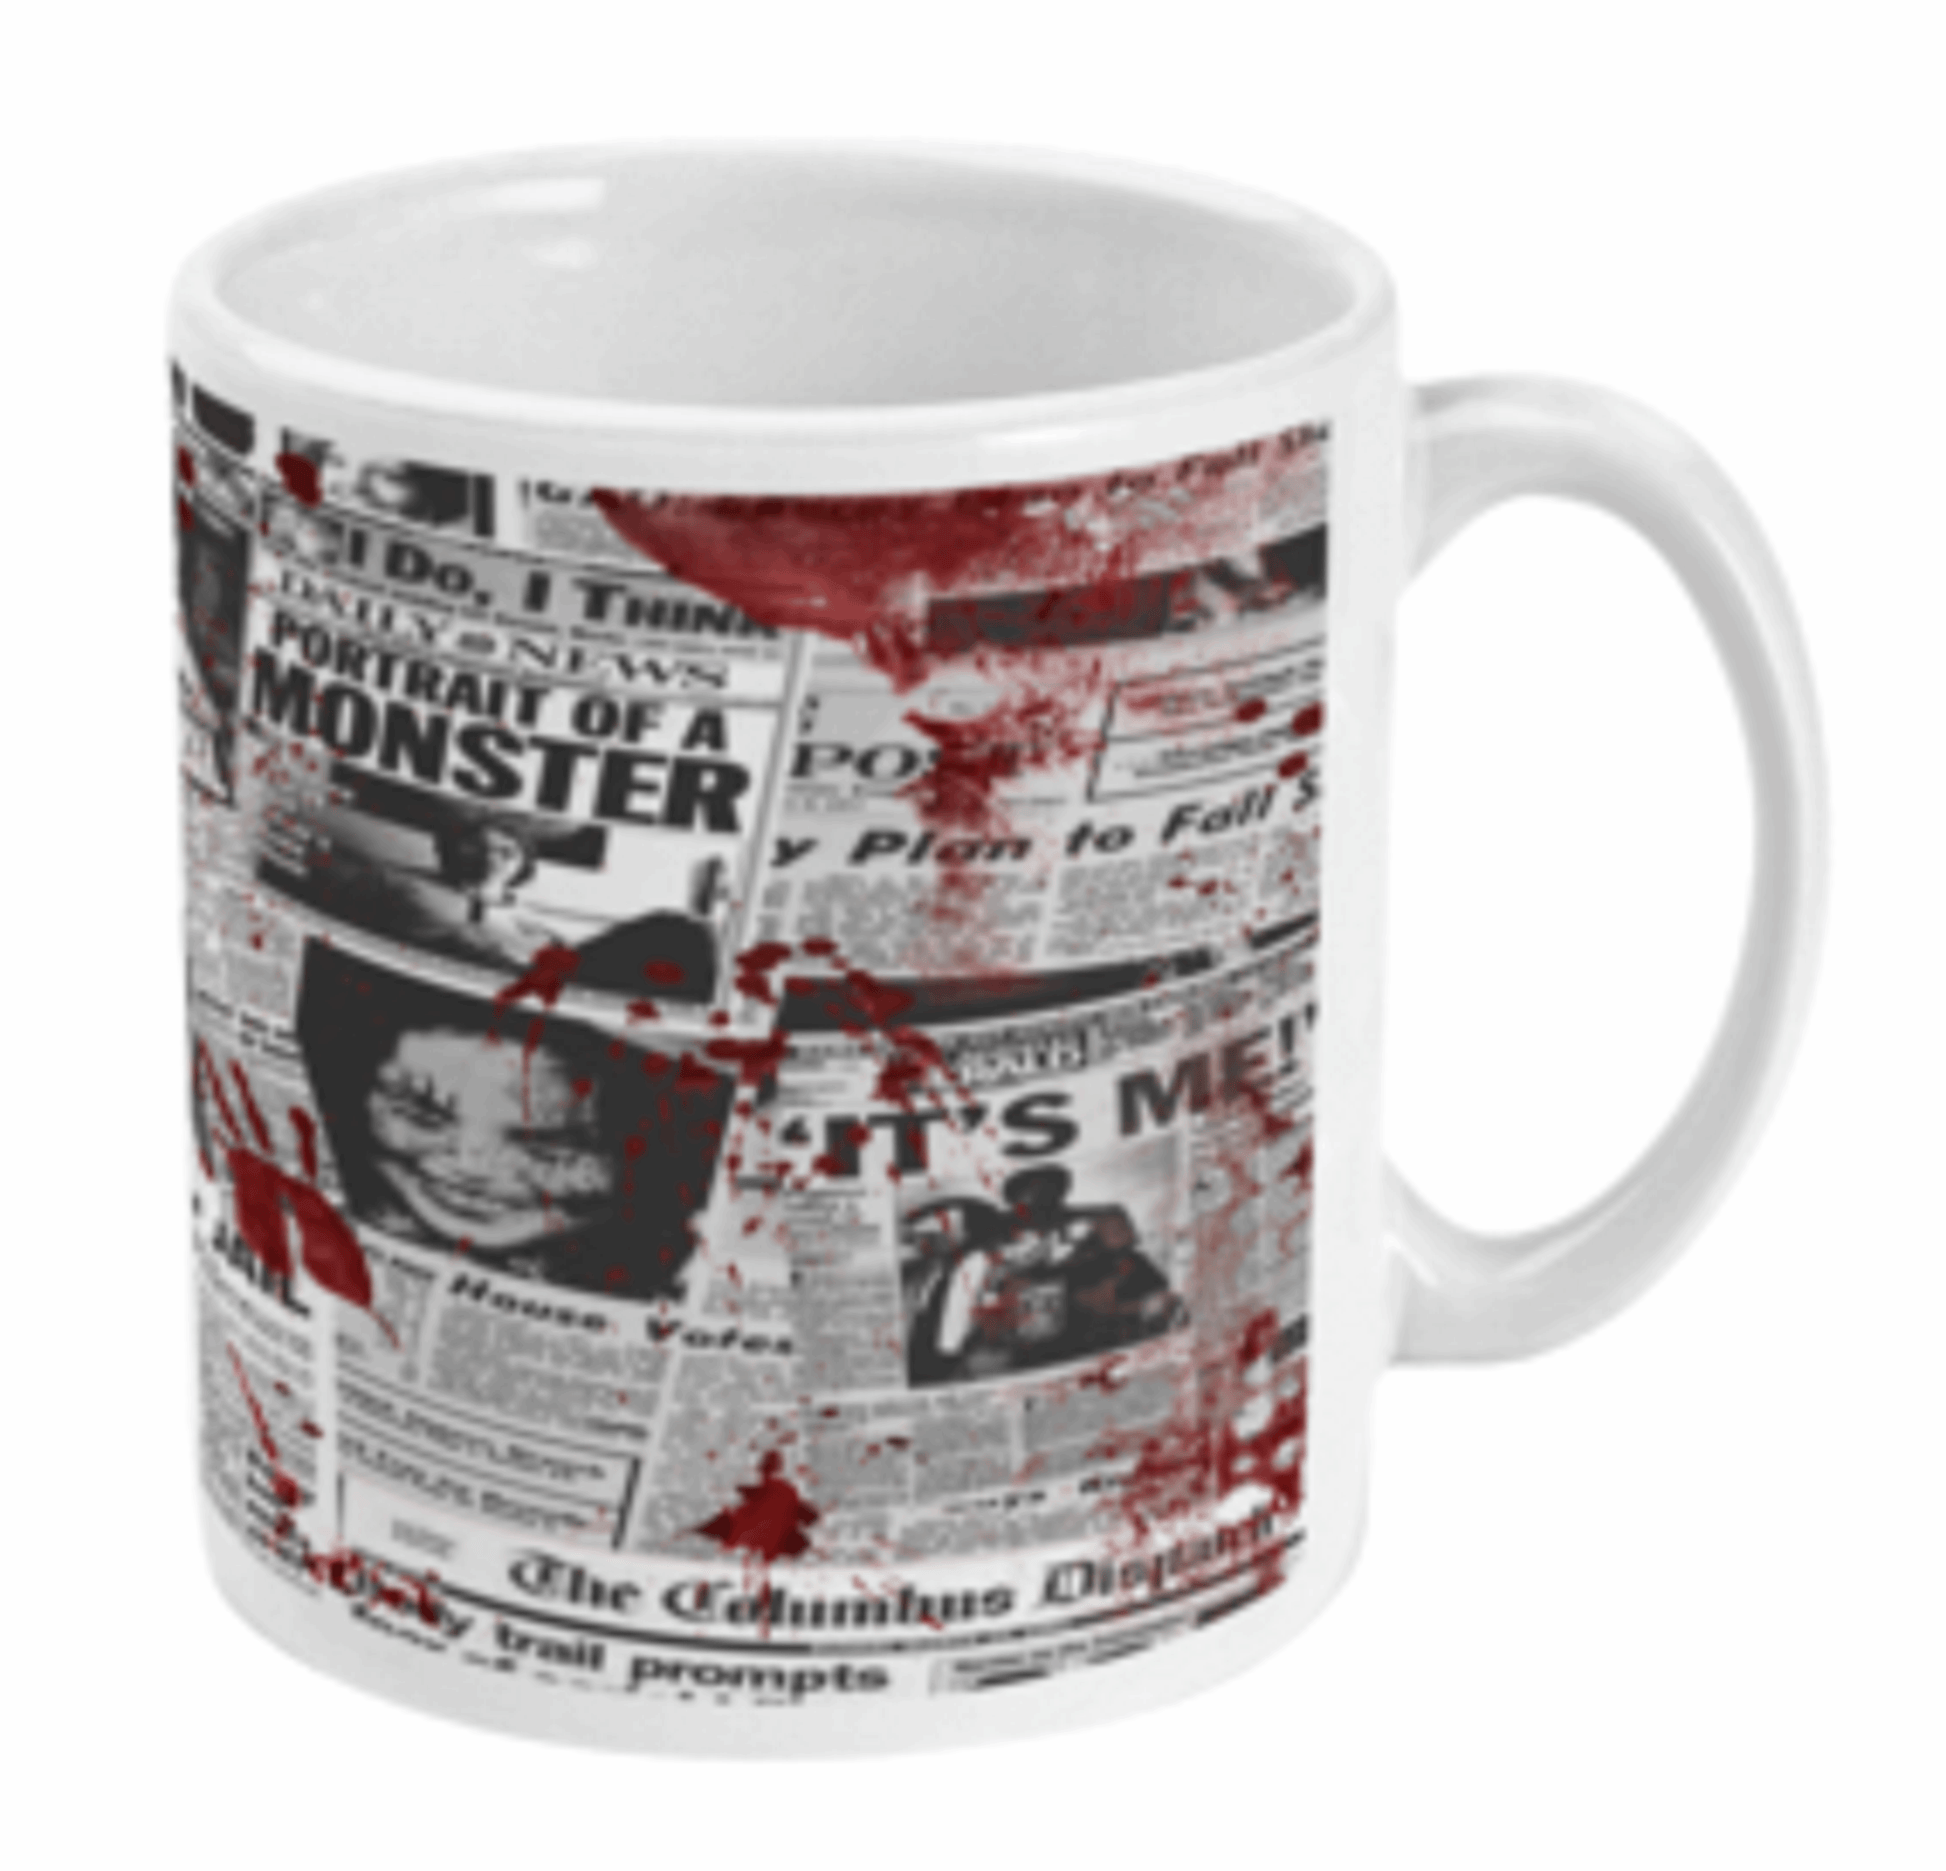  Serial Killers Newspaper Headlines Mug by Free Spirit Accessories sold by Free Spirit Accessories